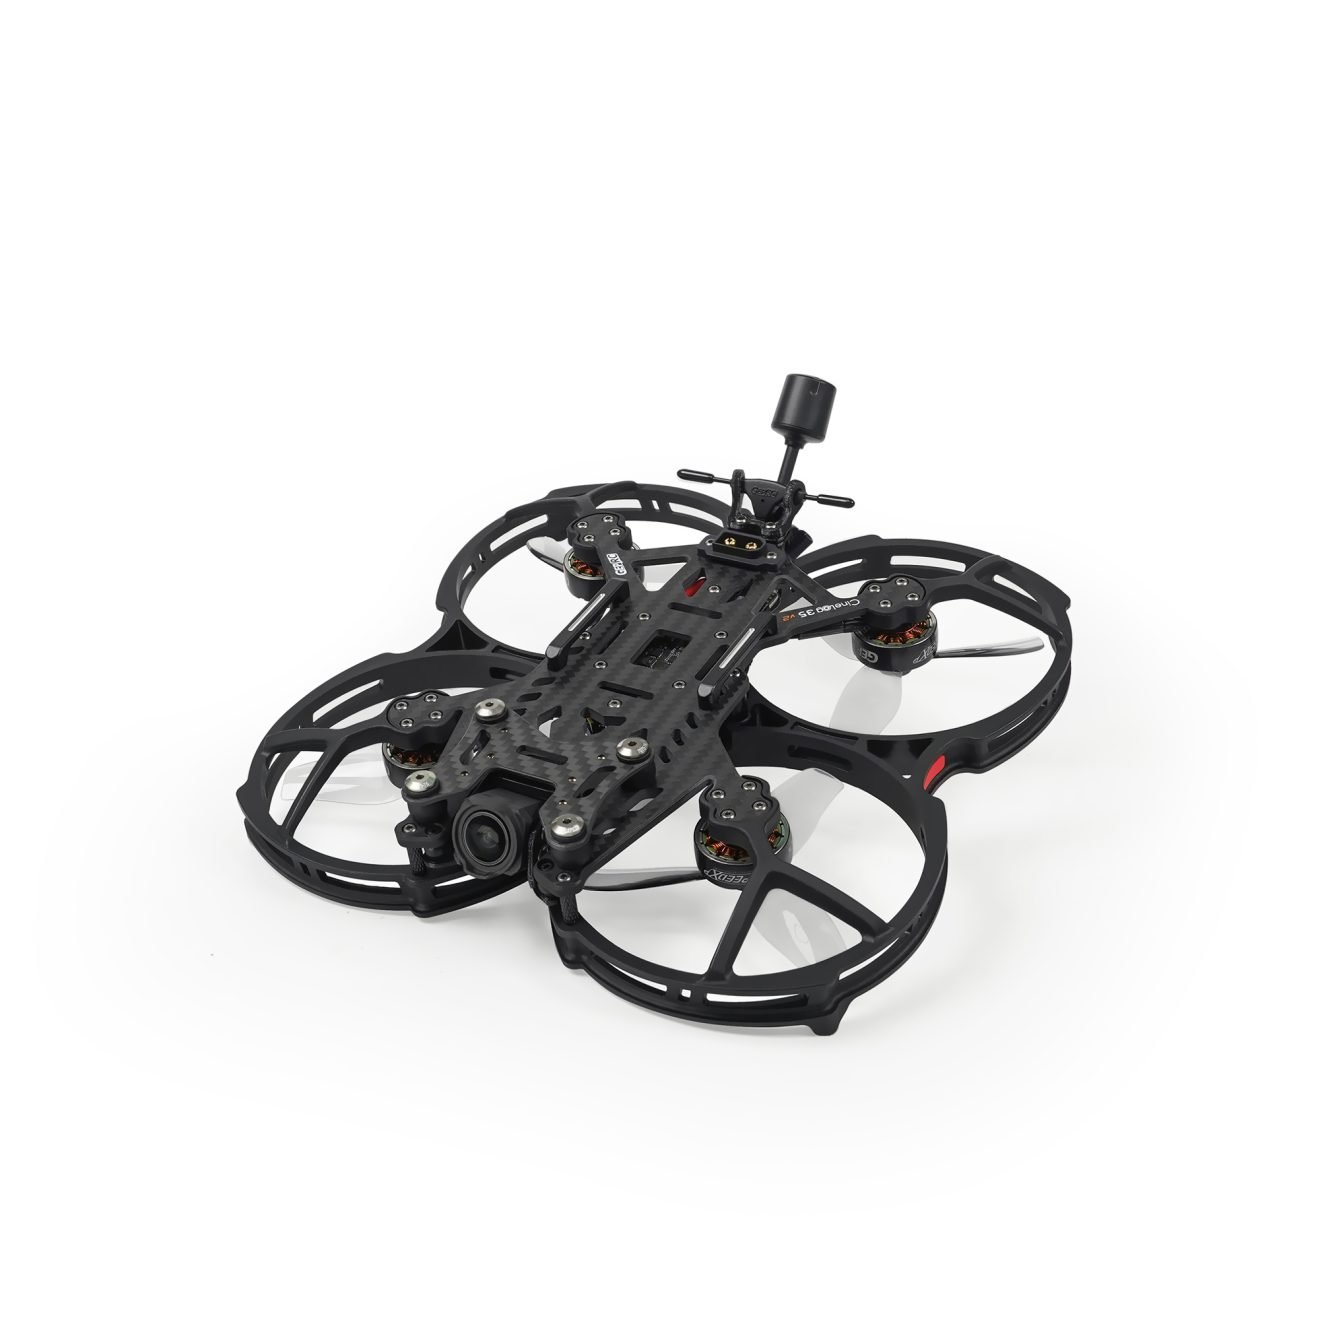 GEPRC CineLog35 V2 HD O3 FPV Drone GPS - ELRS 2.4G